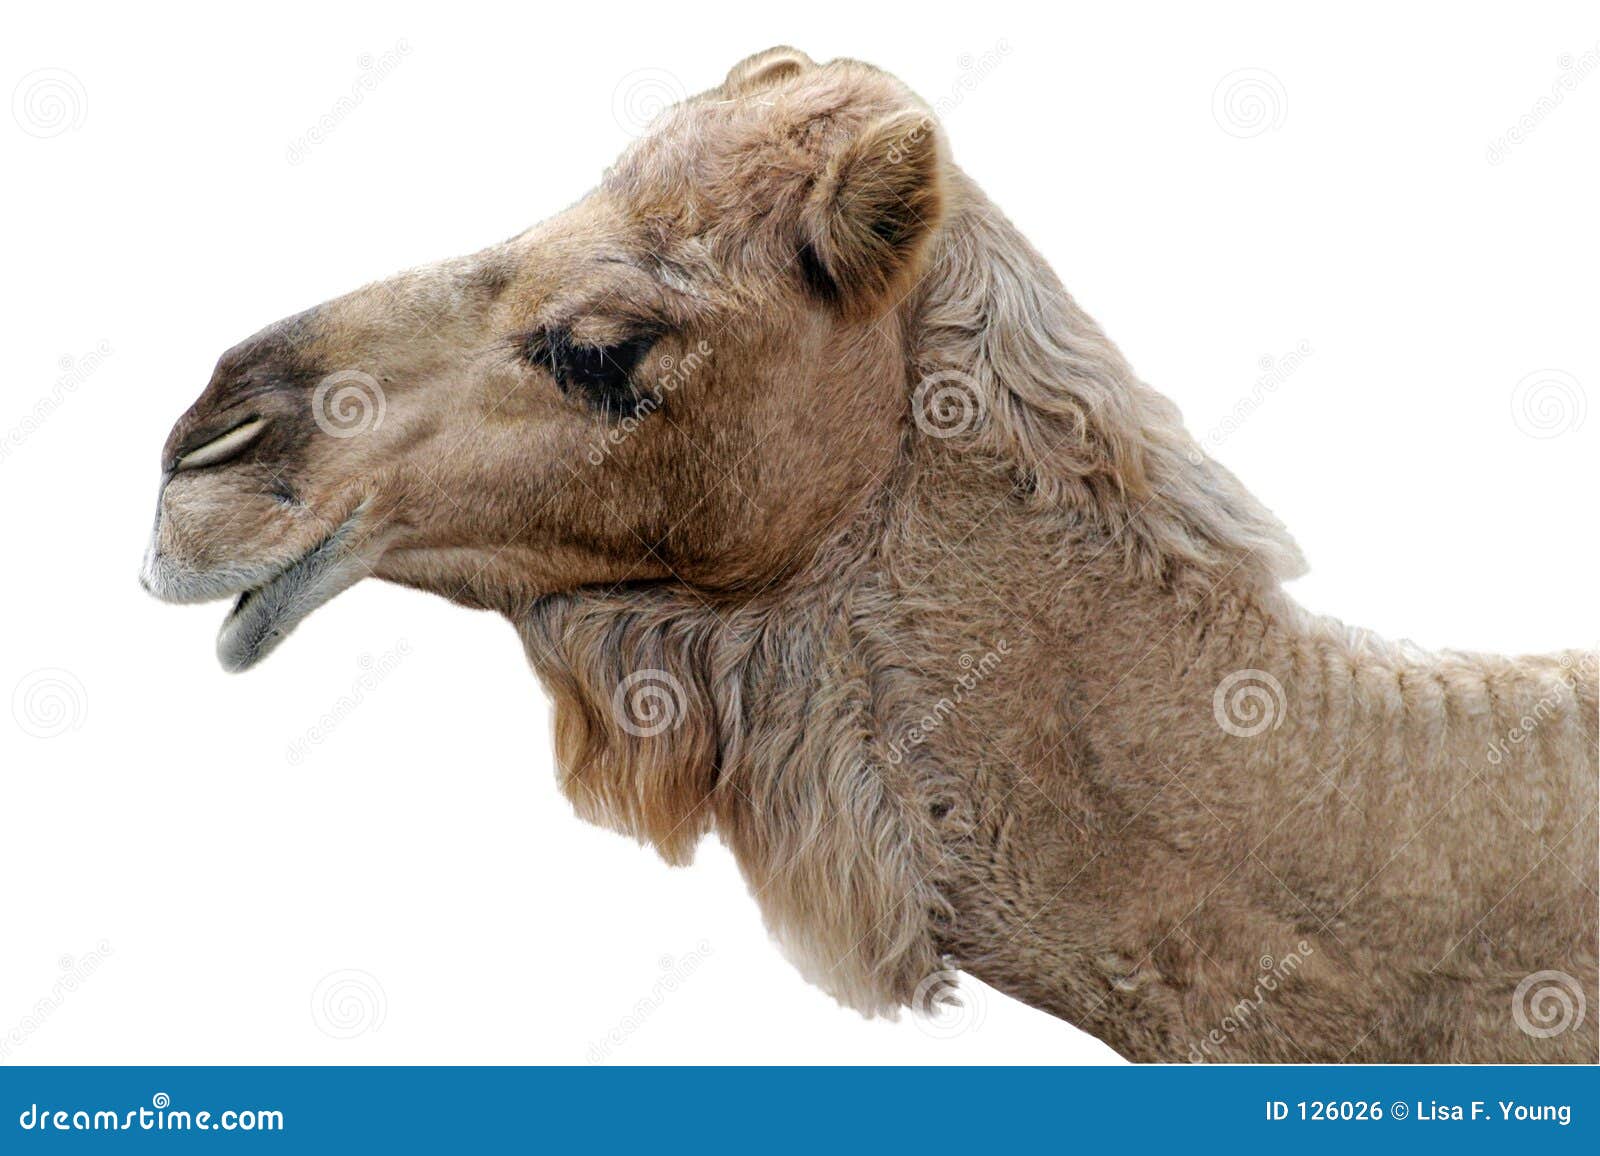 happy camel 